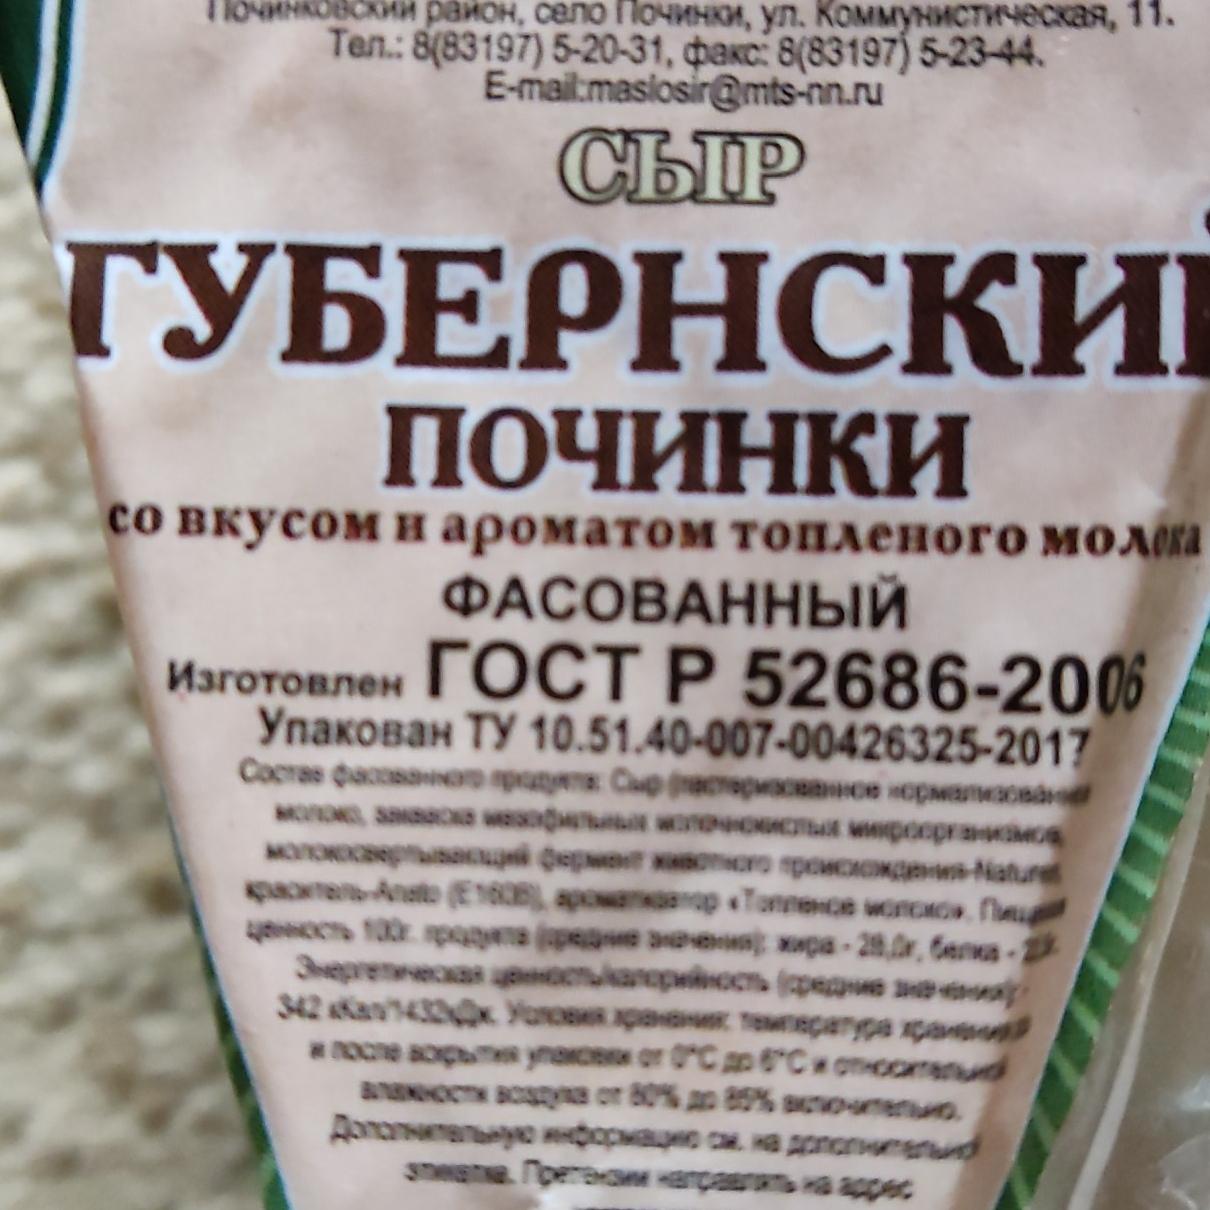 Фото - Сыр Губернский со вкусом и ароматом топленого молока Починки